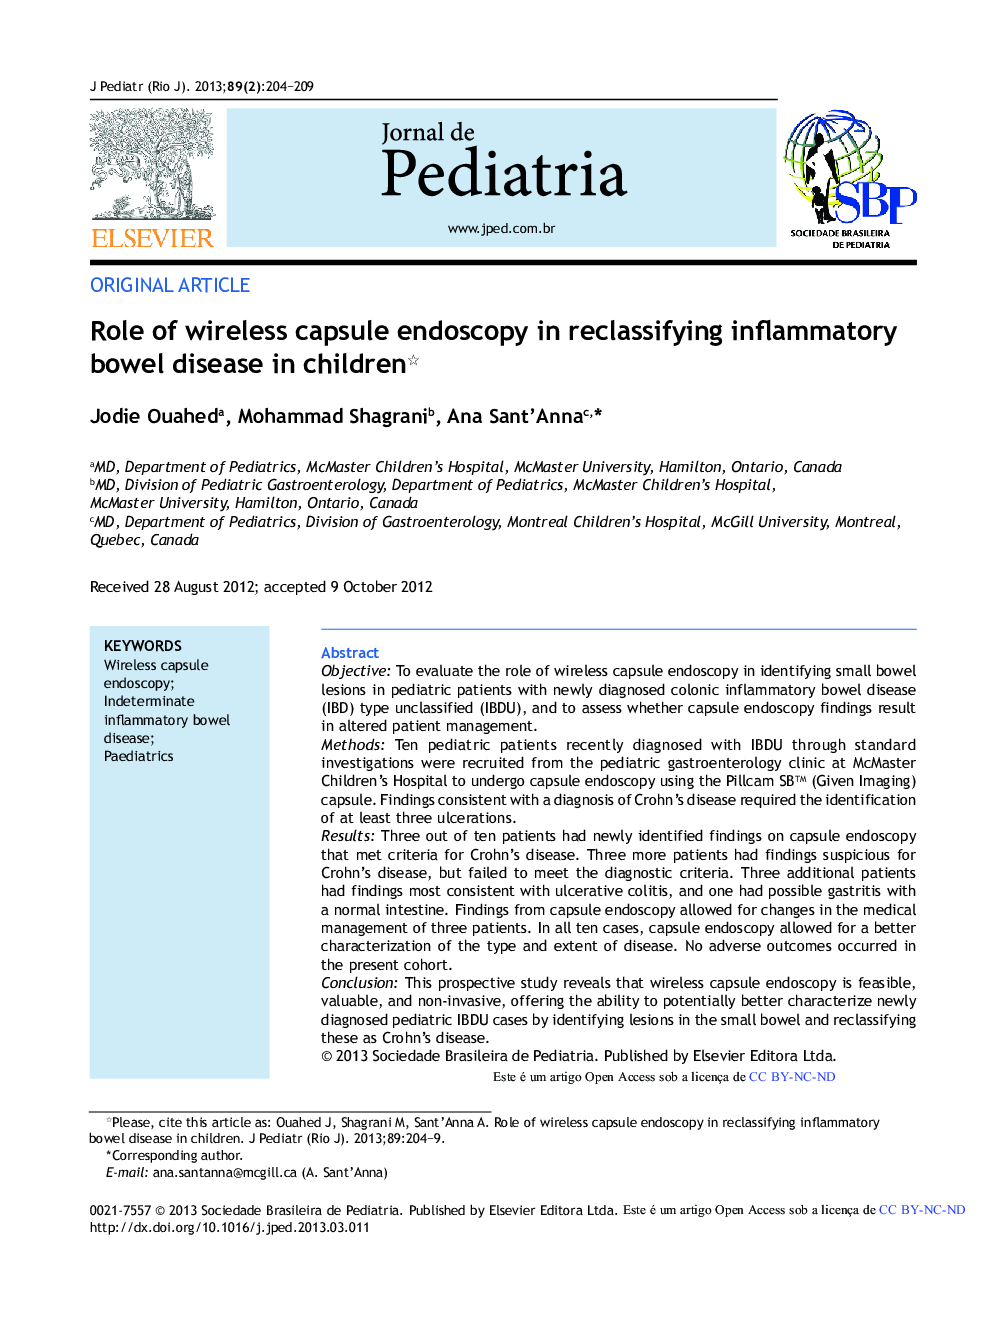 Role of wireless capsule endoscopy in reclassifying inflammatory bowel disease in children *